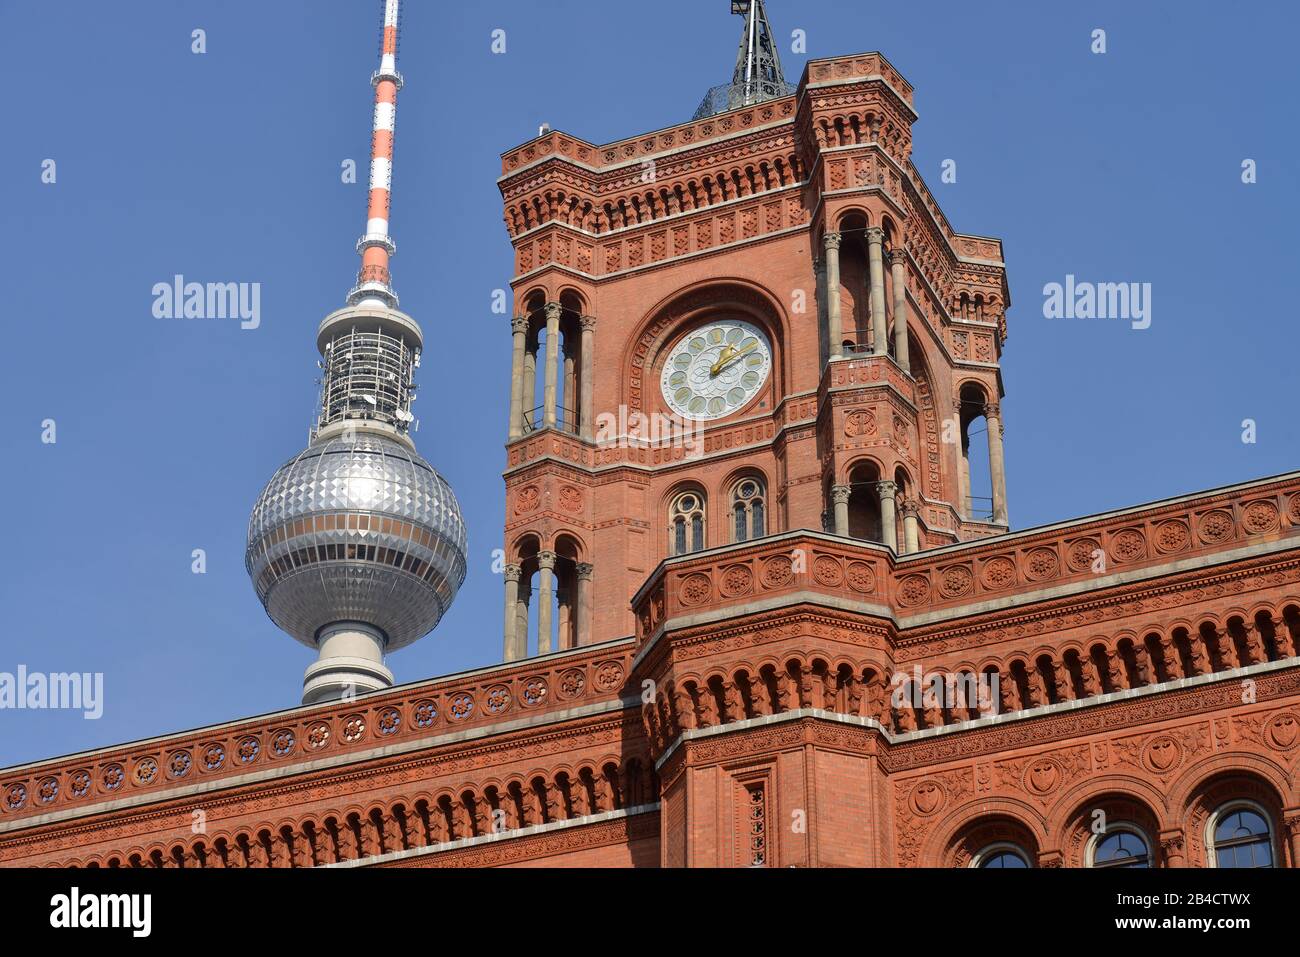 Fernsehturm, Rotes Rathaus, Mitte, Berlin, Deutschland Stock Photo